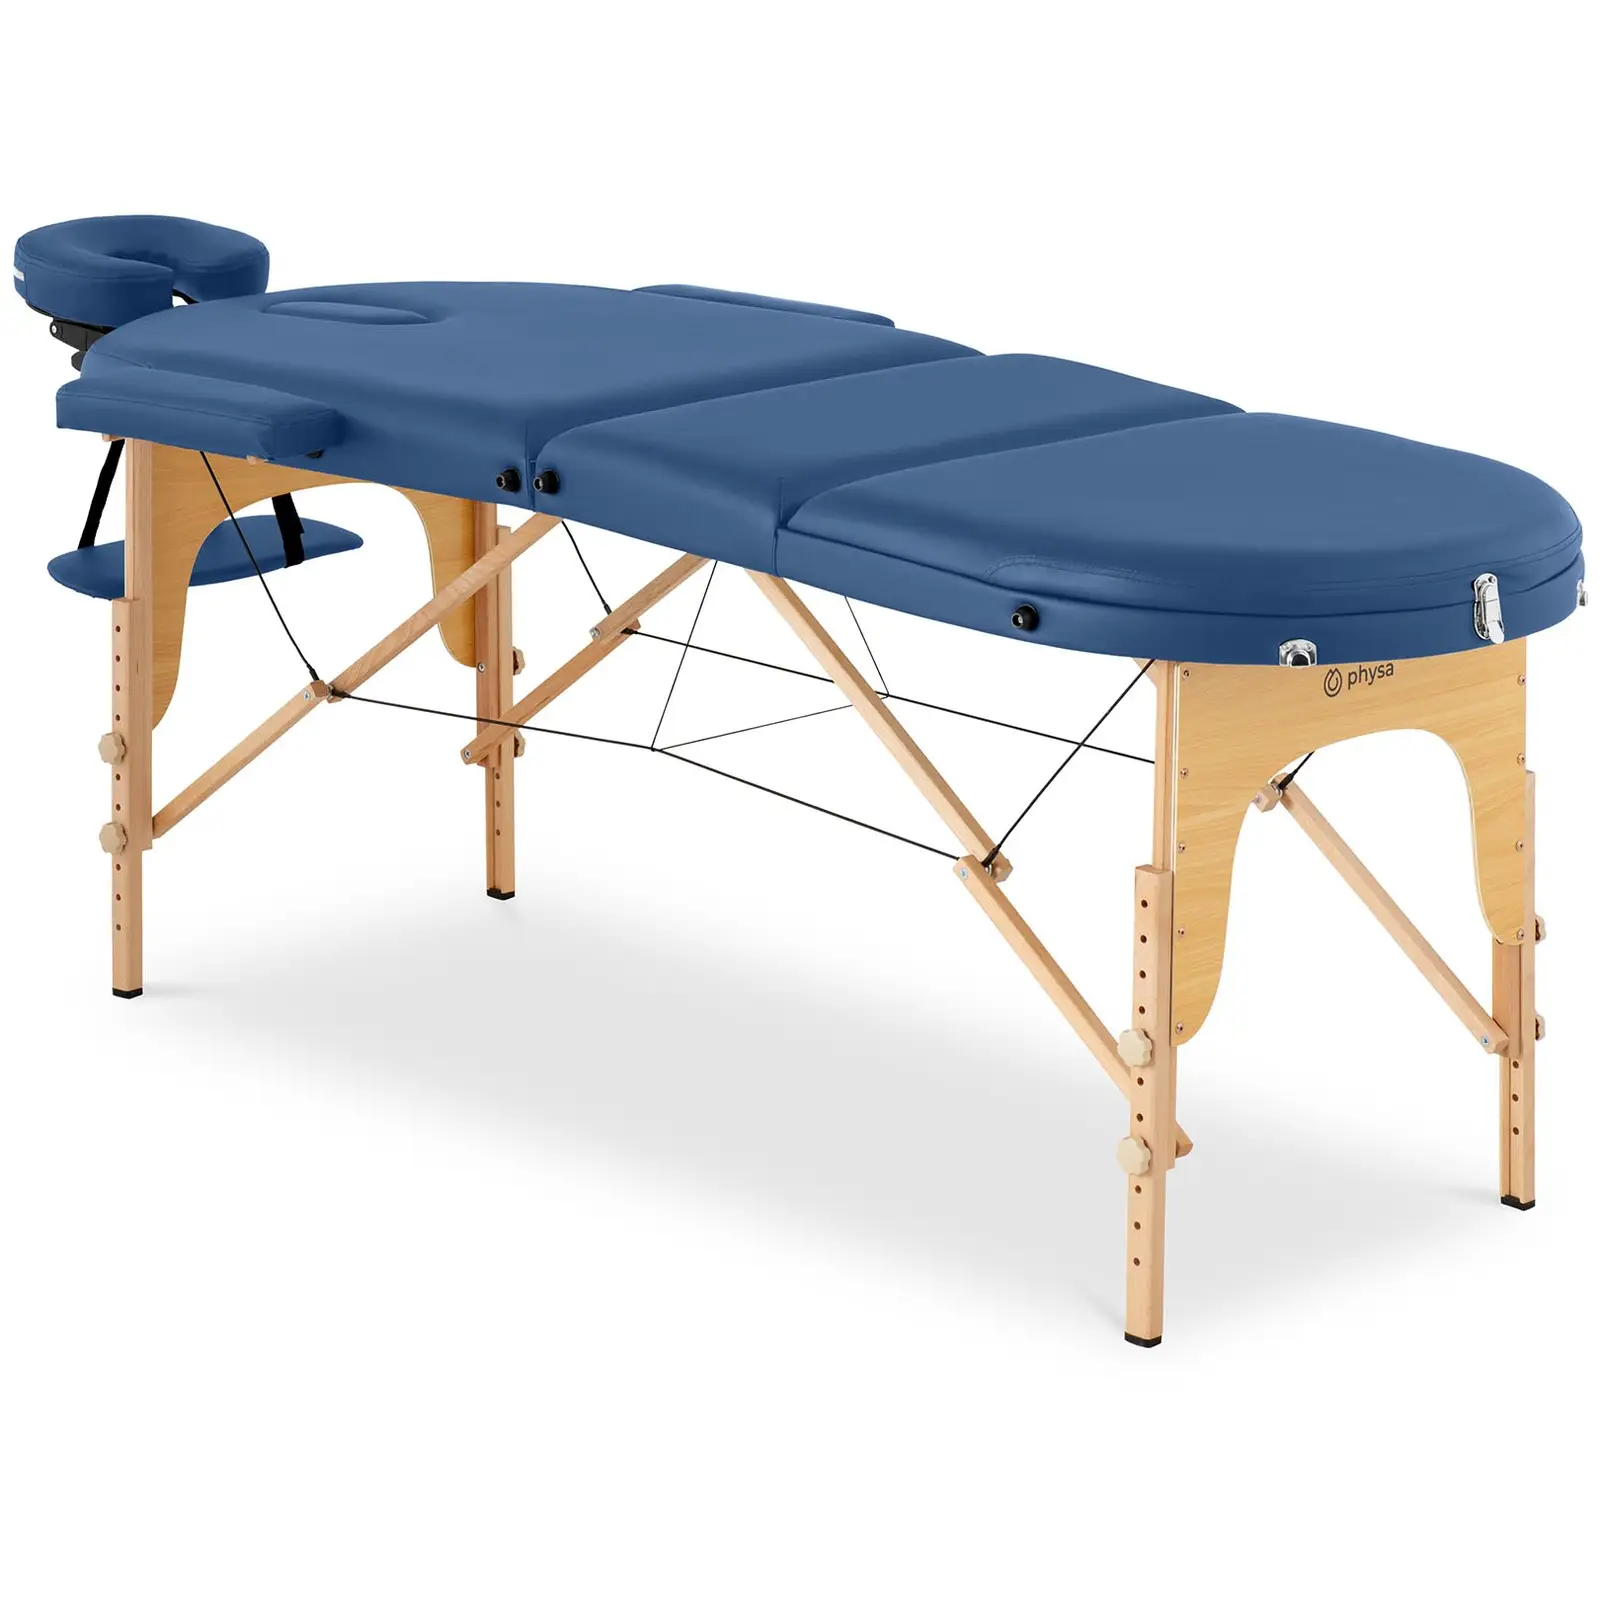 Πτυσσόμενο τραπέζι μασάζ - 185-211 x 70-88 x 63-85 cm - 227 kg - Blue